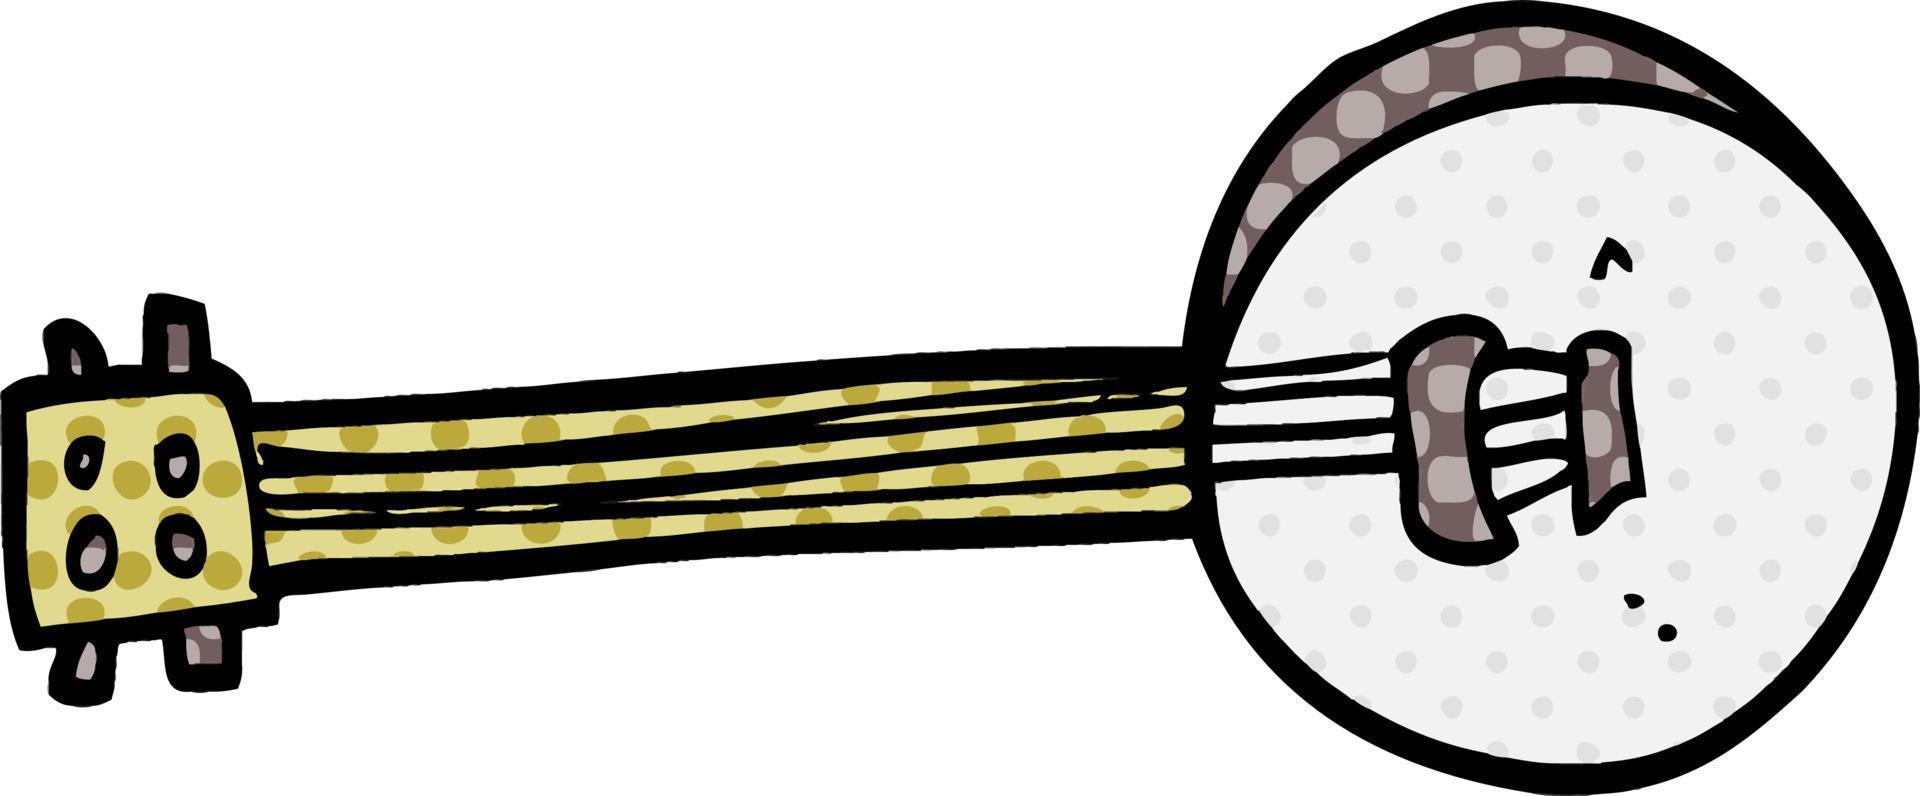 cartoon doodle banjo vector